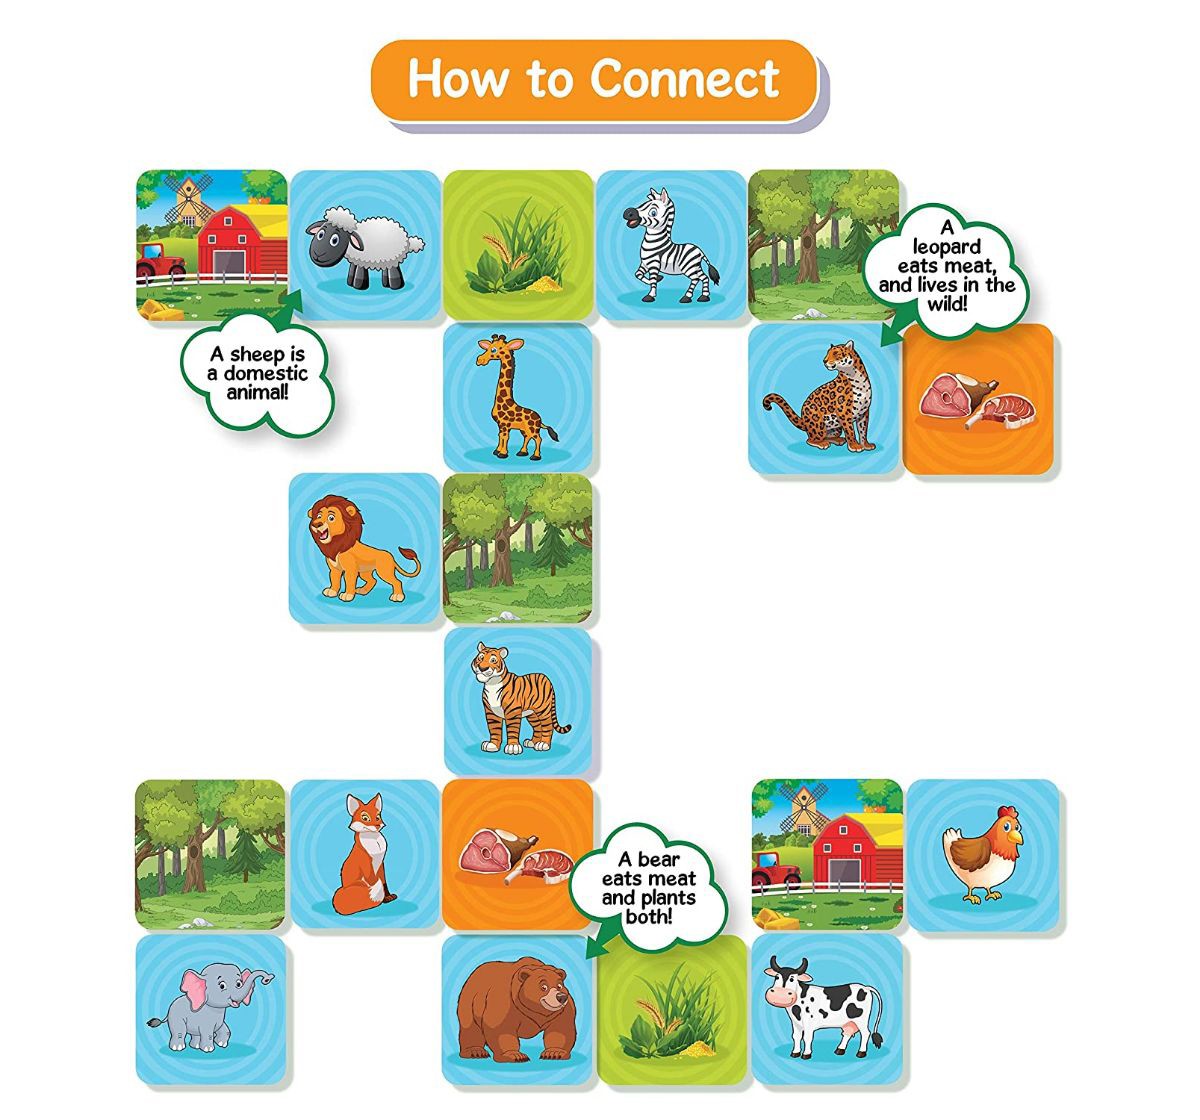 Skillmatics Connectors Animal Planet Paper card game Multicolor 3Y+